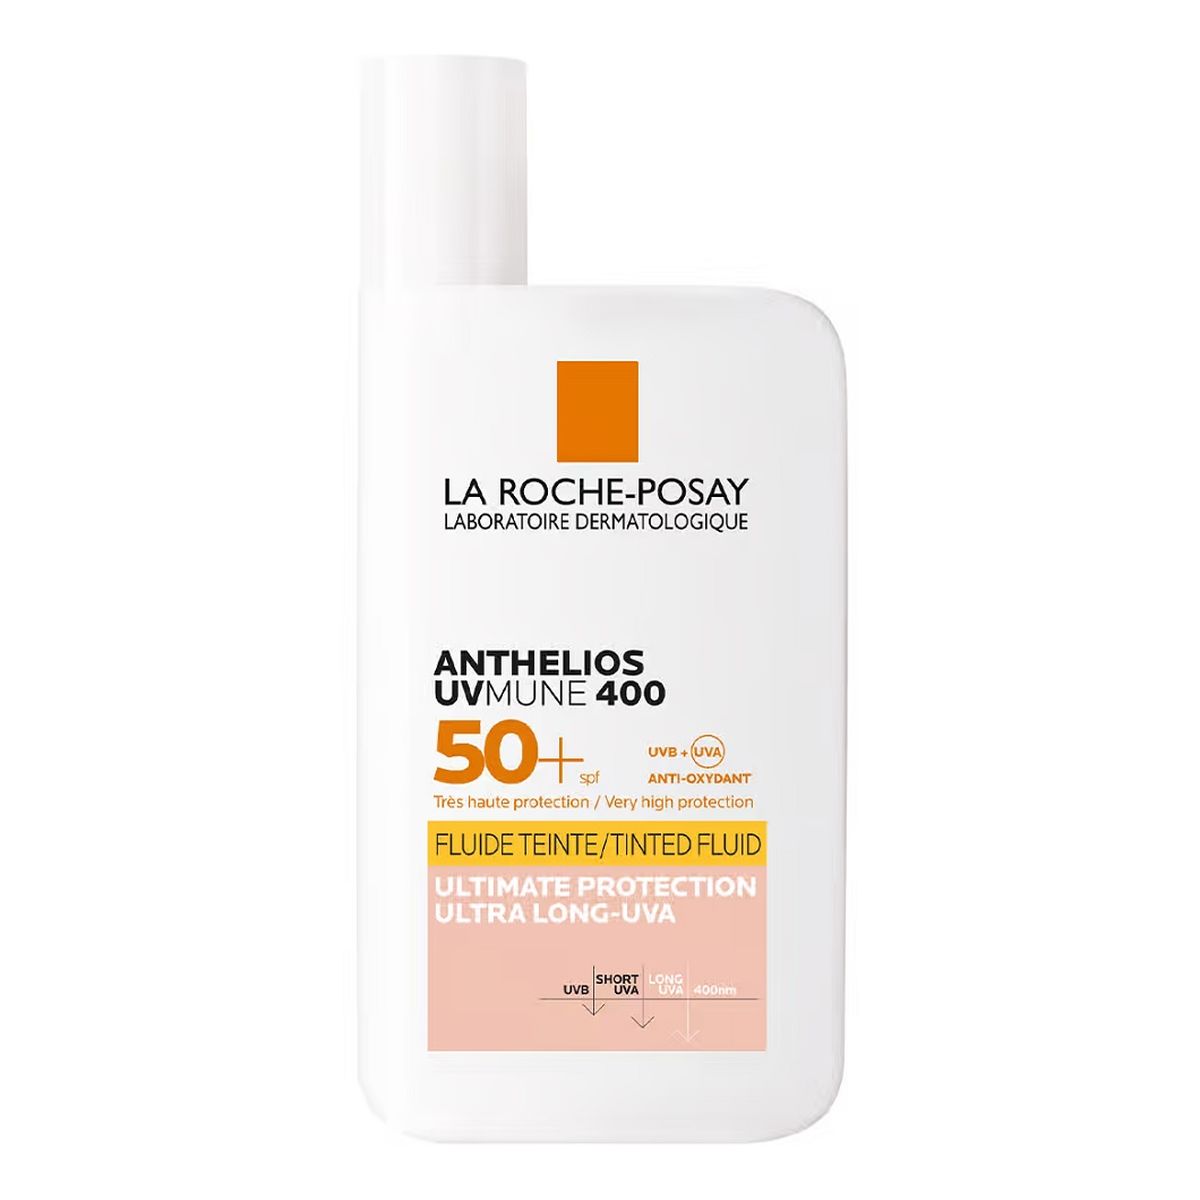 La Roche Posay Anthelios uvmune 400 barwiący fluid przeciwsłoneczny spf50+ 50ml